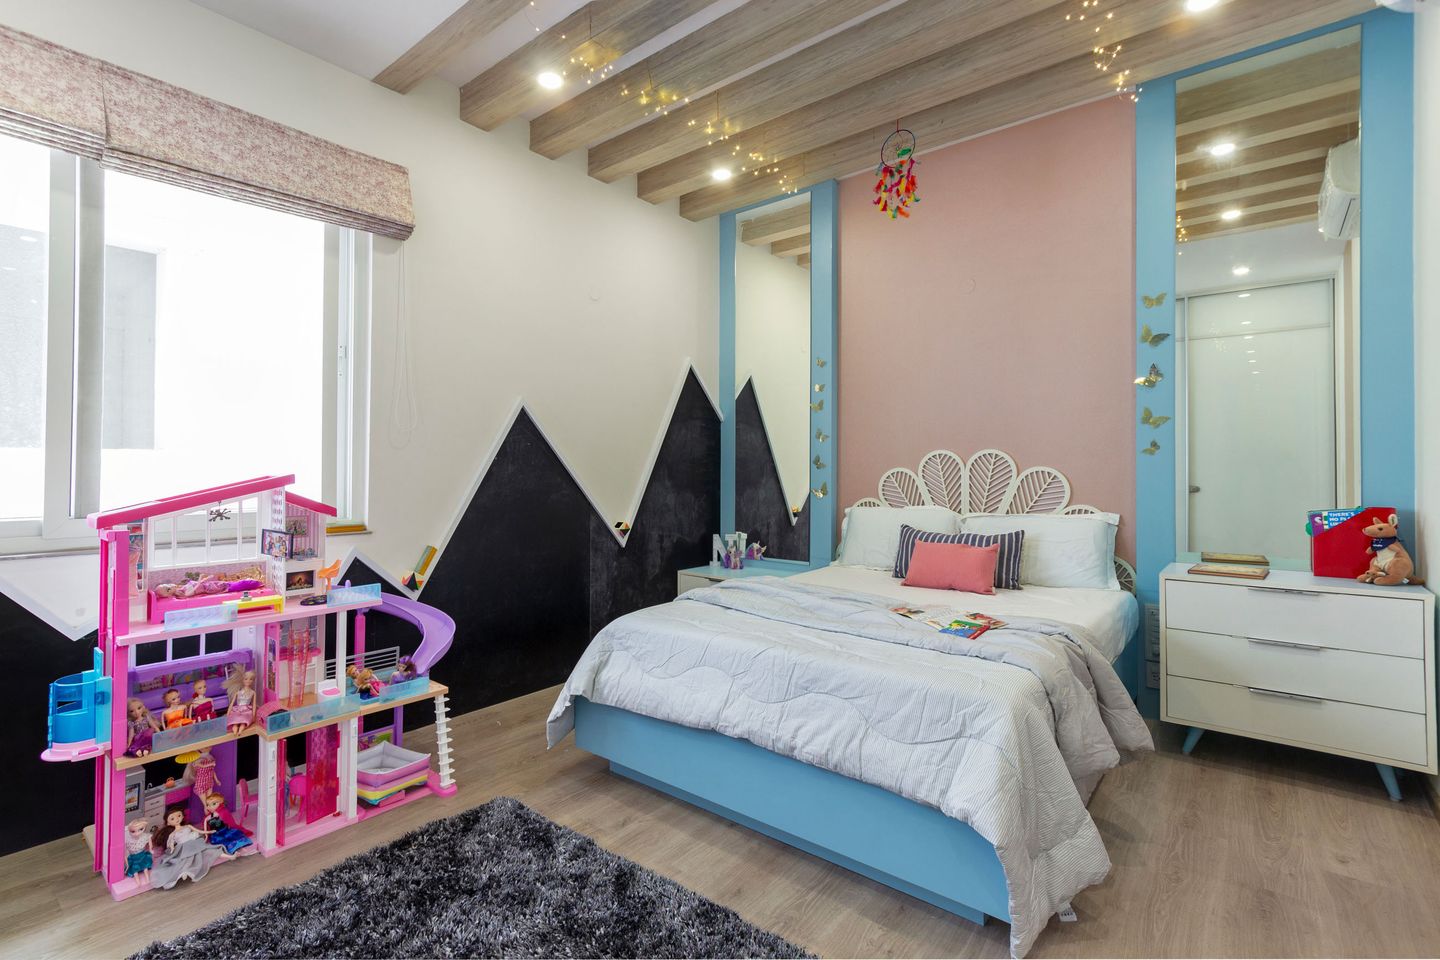 Kids Bedroom Design With Wooden Panelled False Ceiling - Livspace